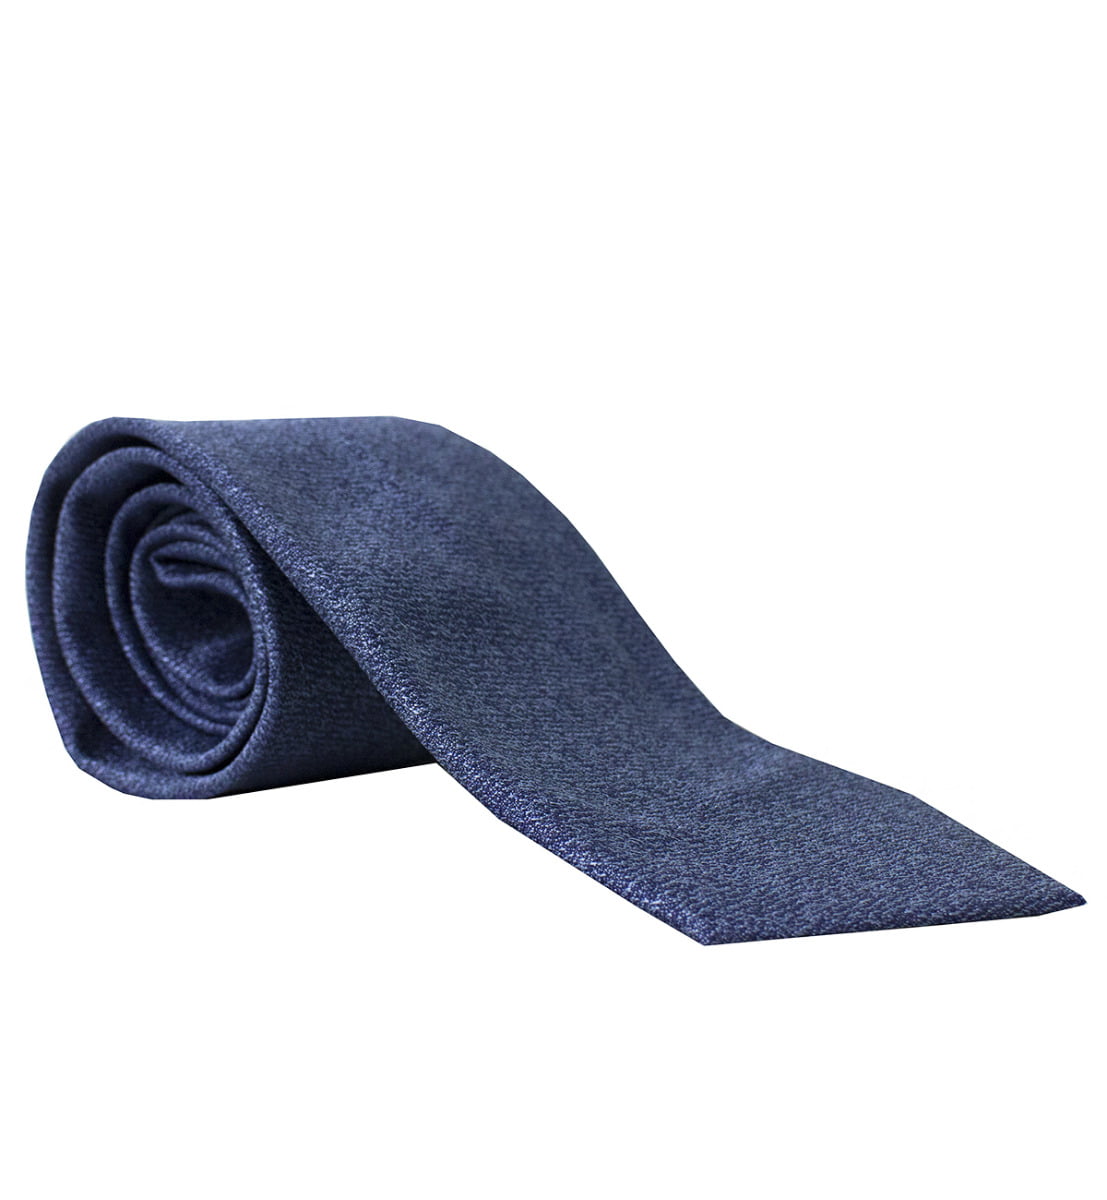 Cravatta uomo blu effetto melange 8cm di larghezza made in italy